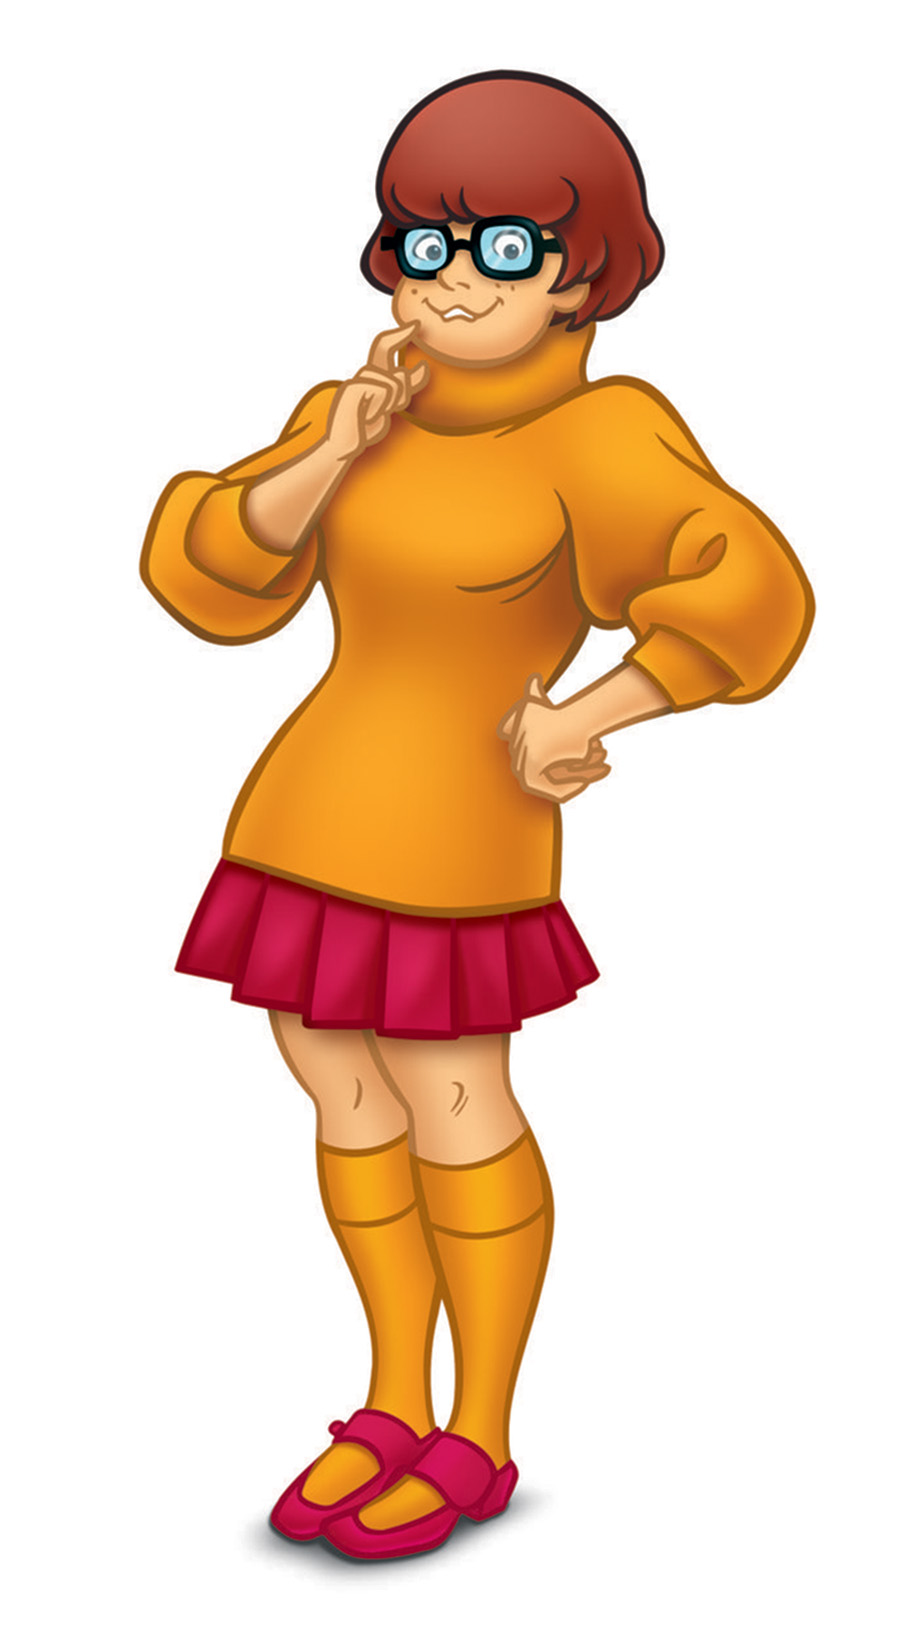 Acabou o mistério! Série animada Velma é renovada para segunda